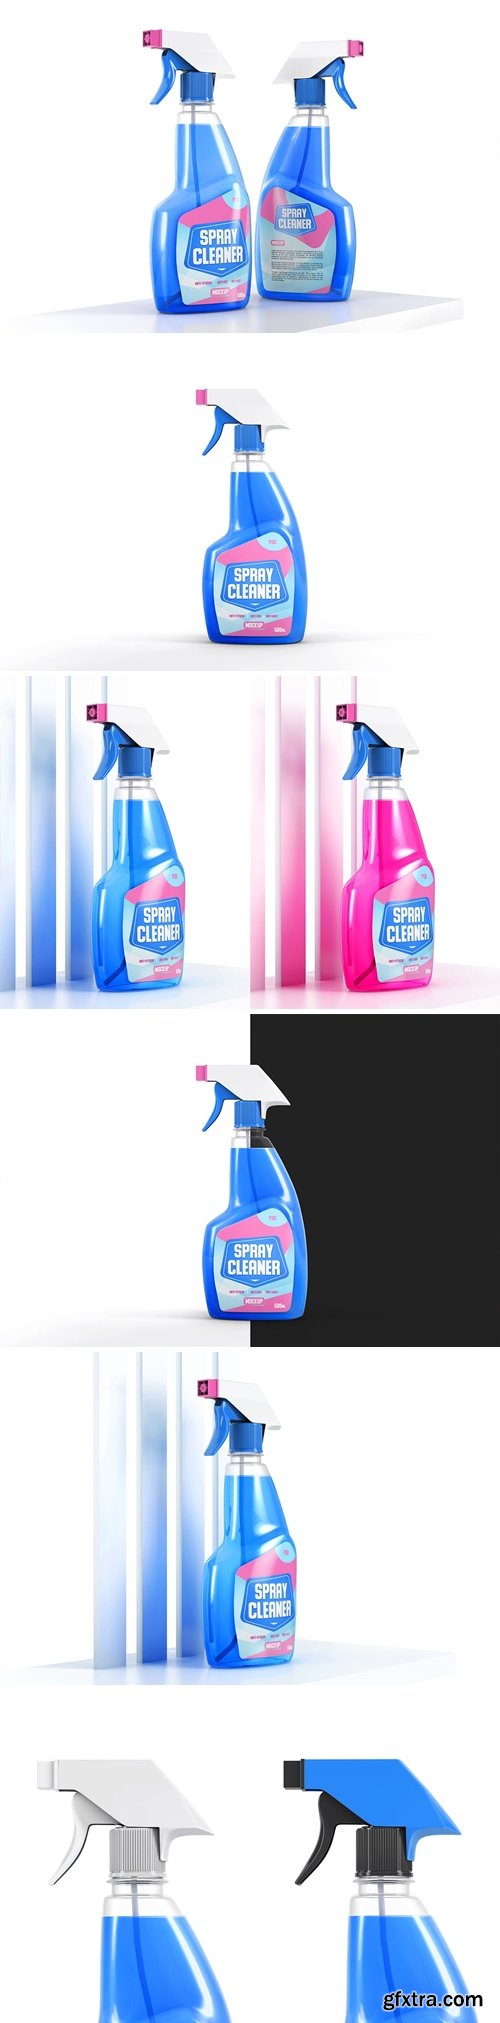 Transparent Spray Cleaner Bottle Mockup